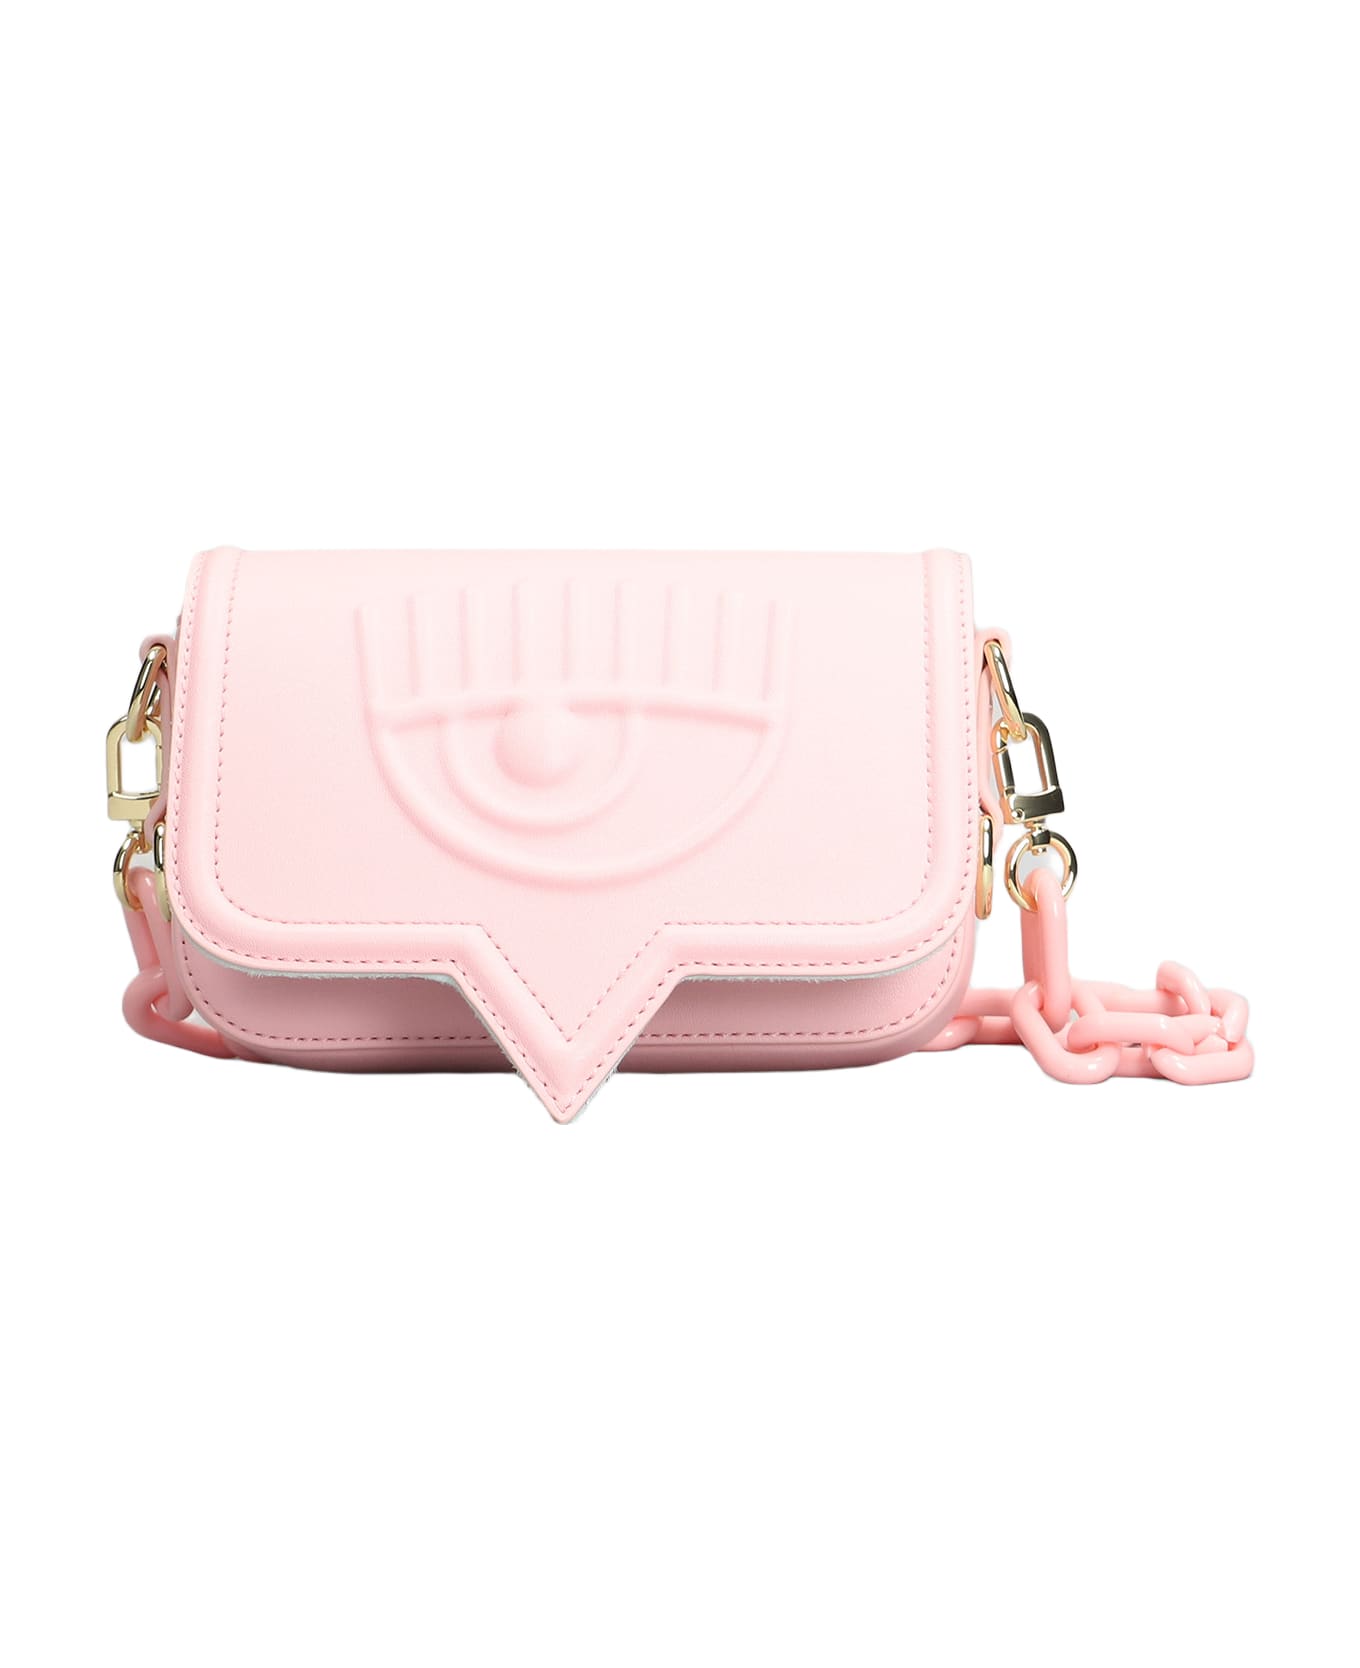 Chiara Ferragni Shoulder Bag In Rose-pink Faux Leather - rose-pink